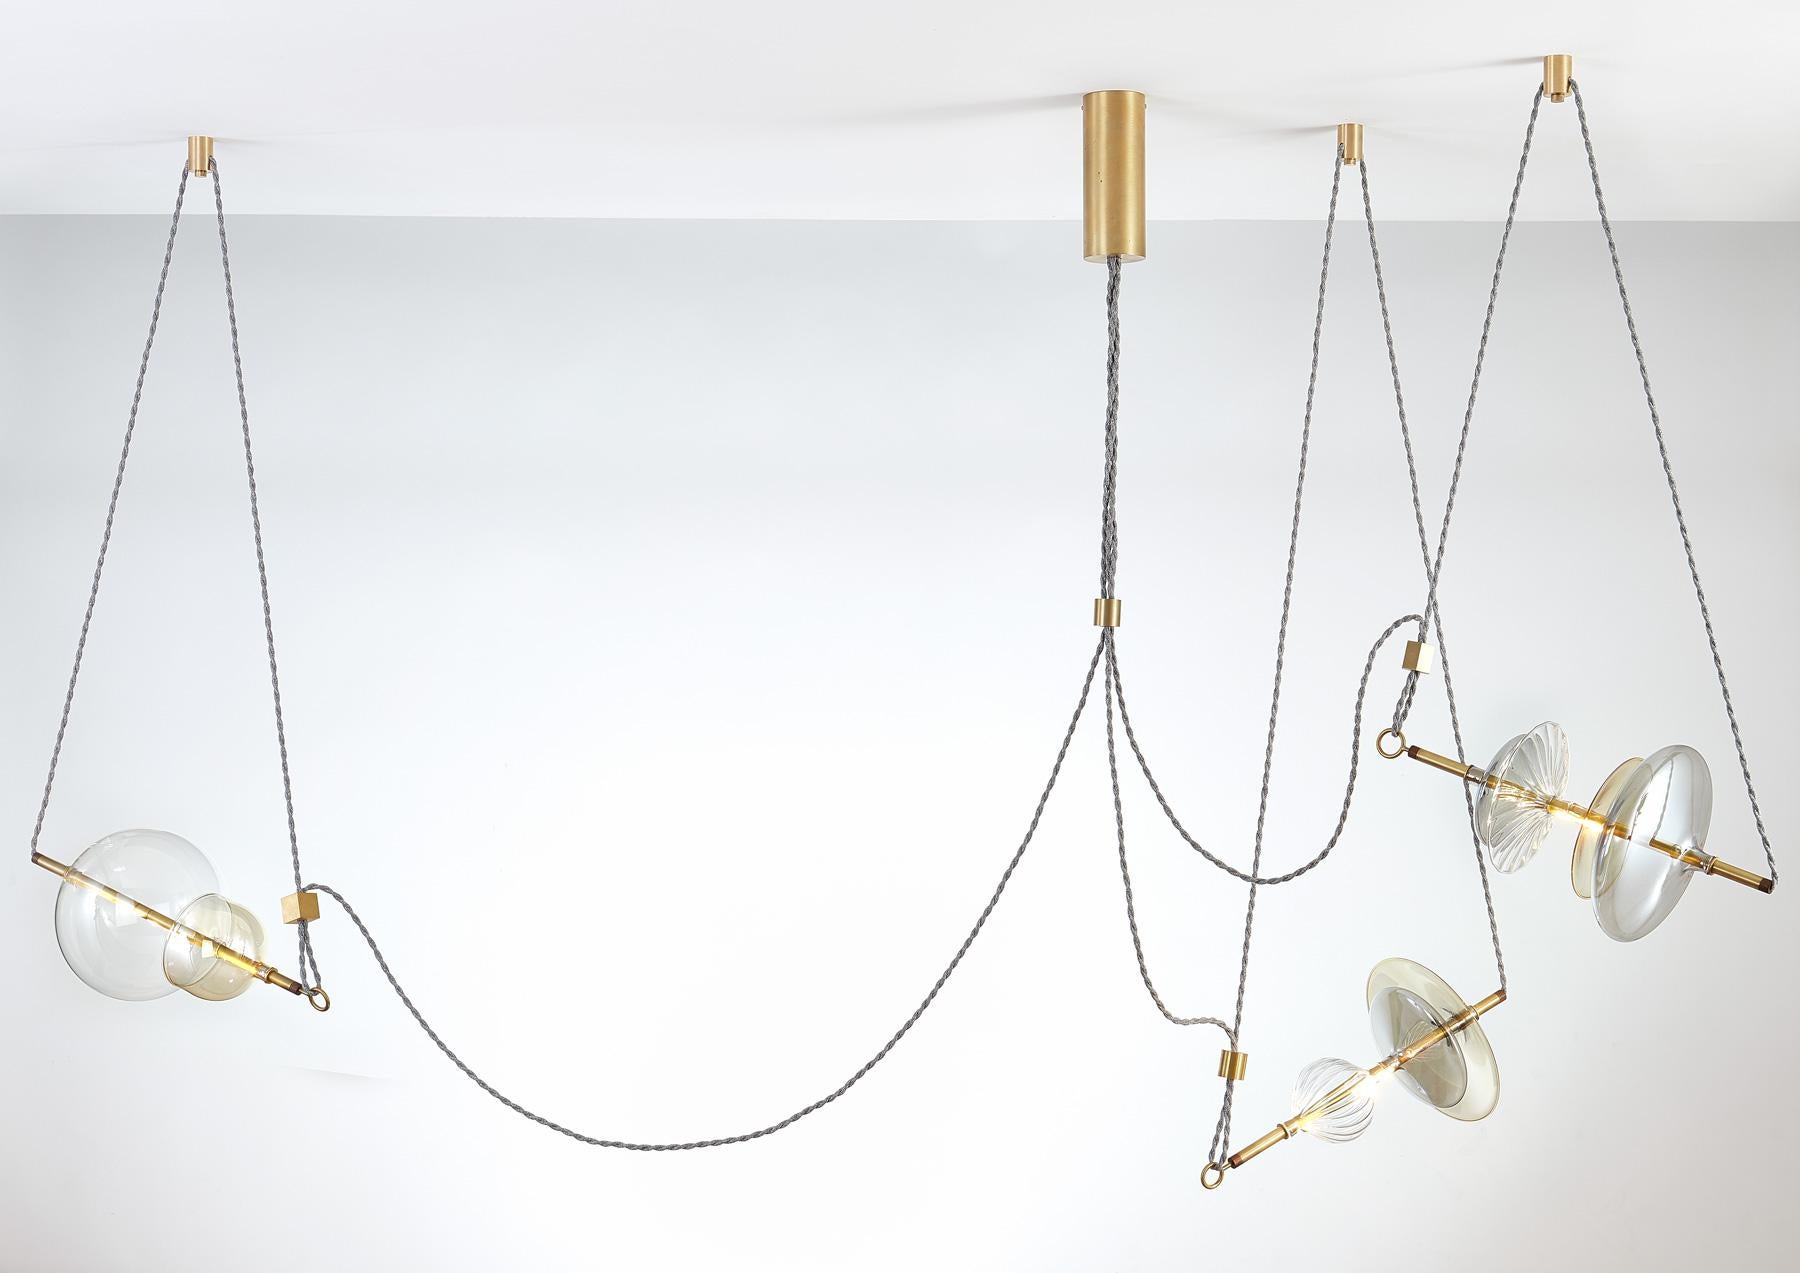 Le lustre contemporain Trapezi s'inspire de l'IDEA d'un trapéziste de cirque.

Le verre soufflé à la main dans une variété de formes et de couleurs est combiné avec des barres de laiton et suspendu par des Corde de lin à des unités de moyeu au